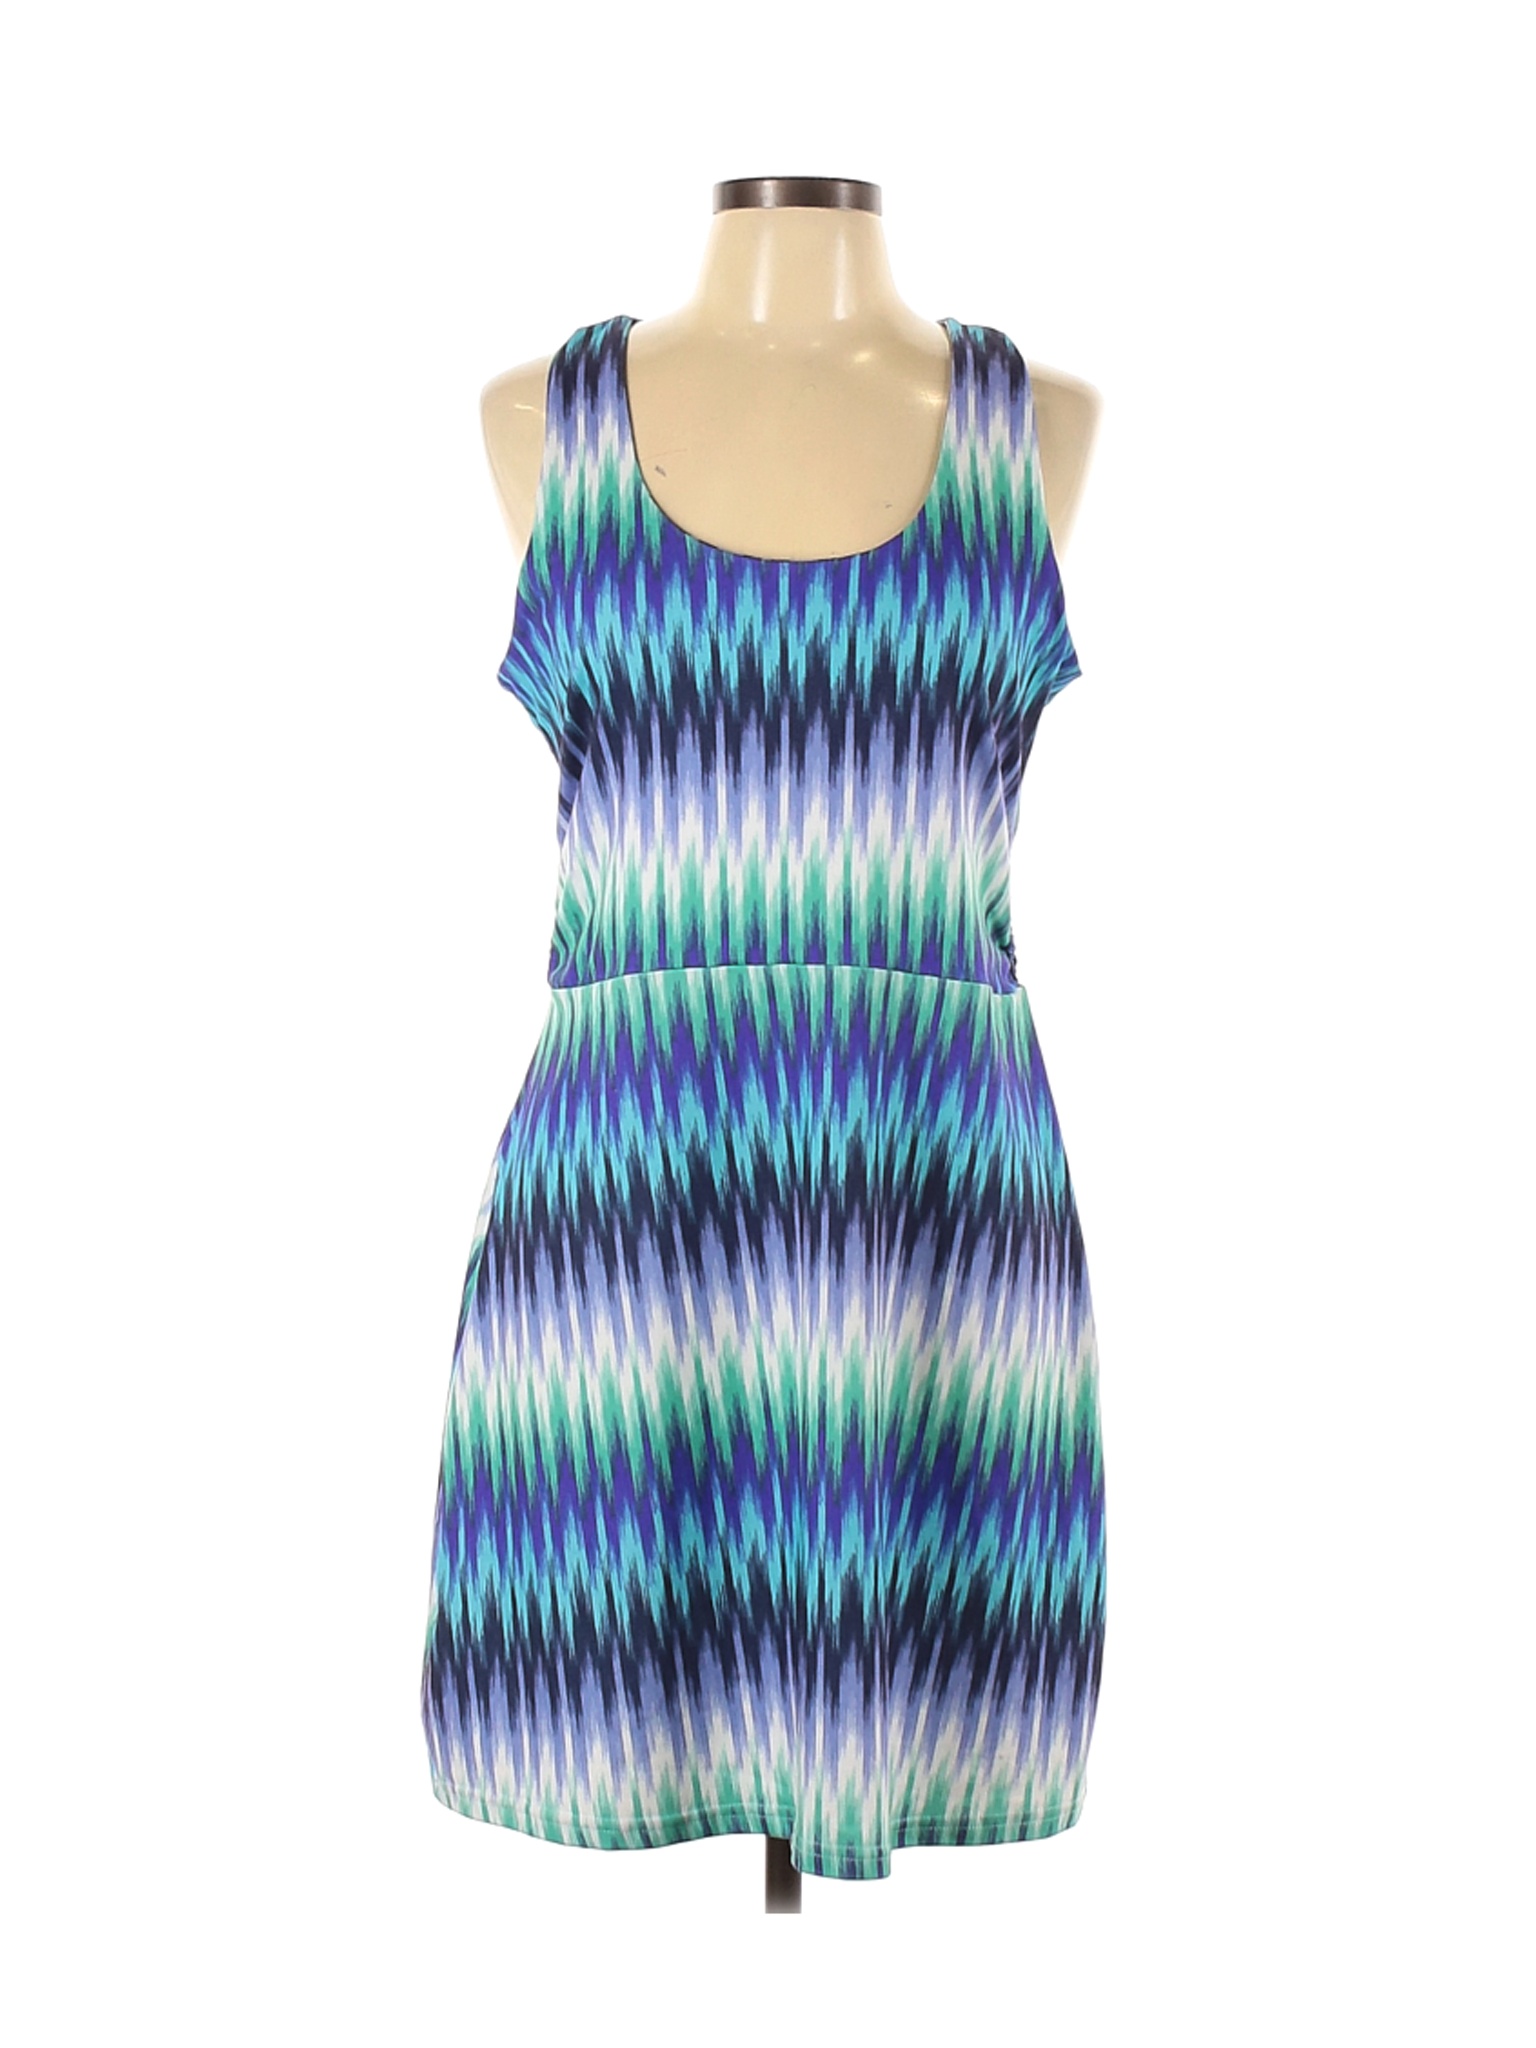 Tehama Women Blue Casual Dress L | eBay